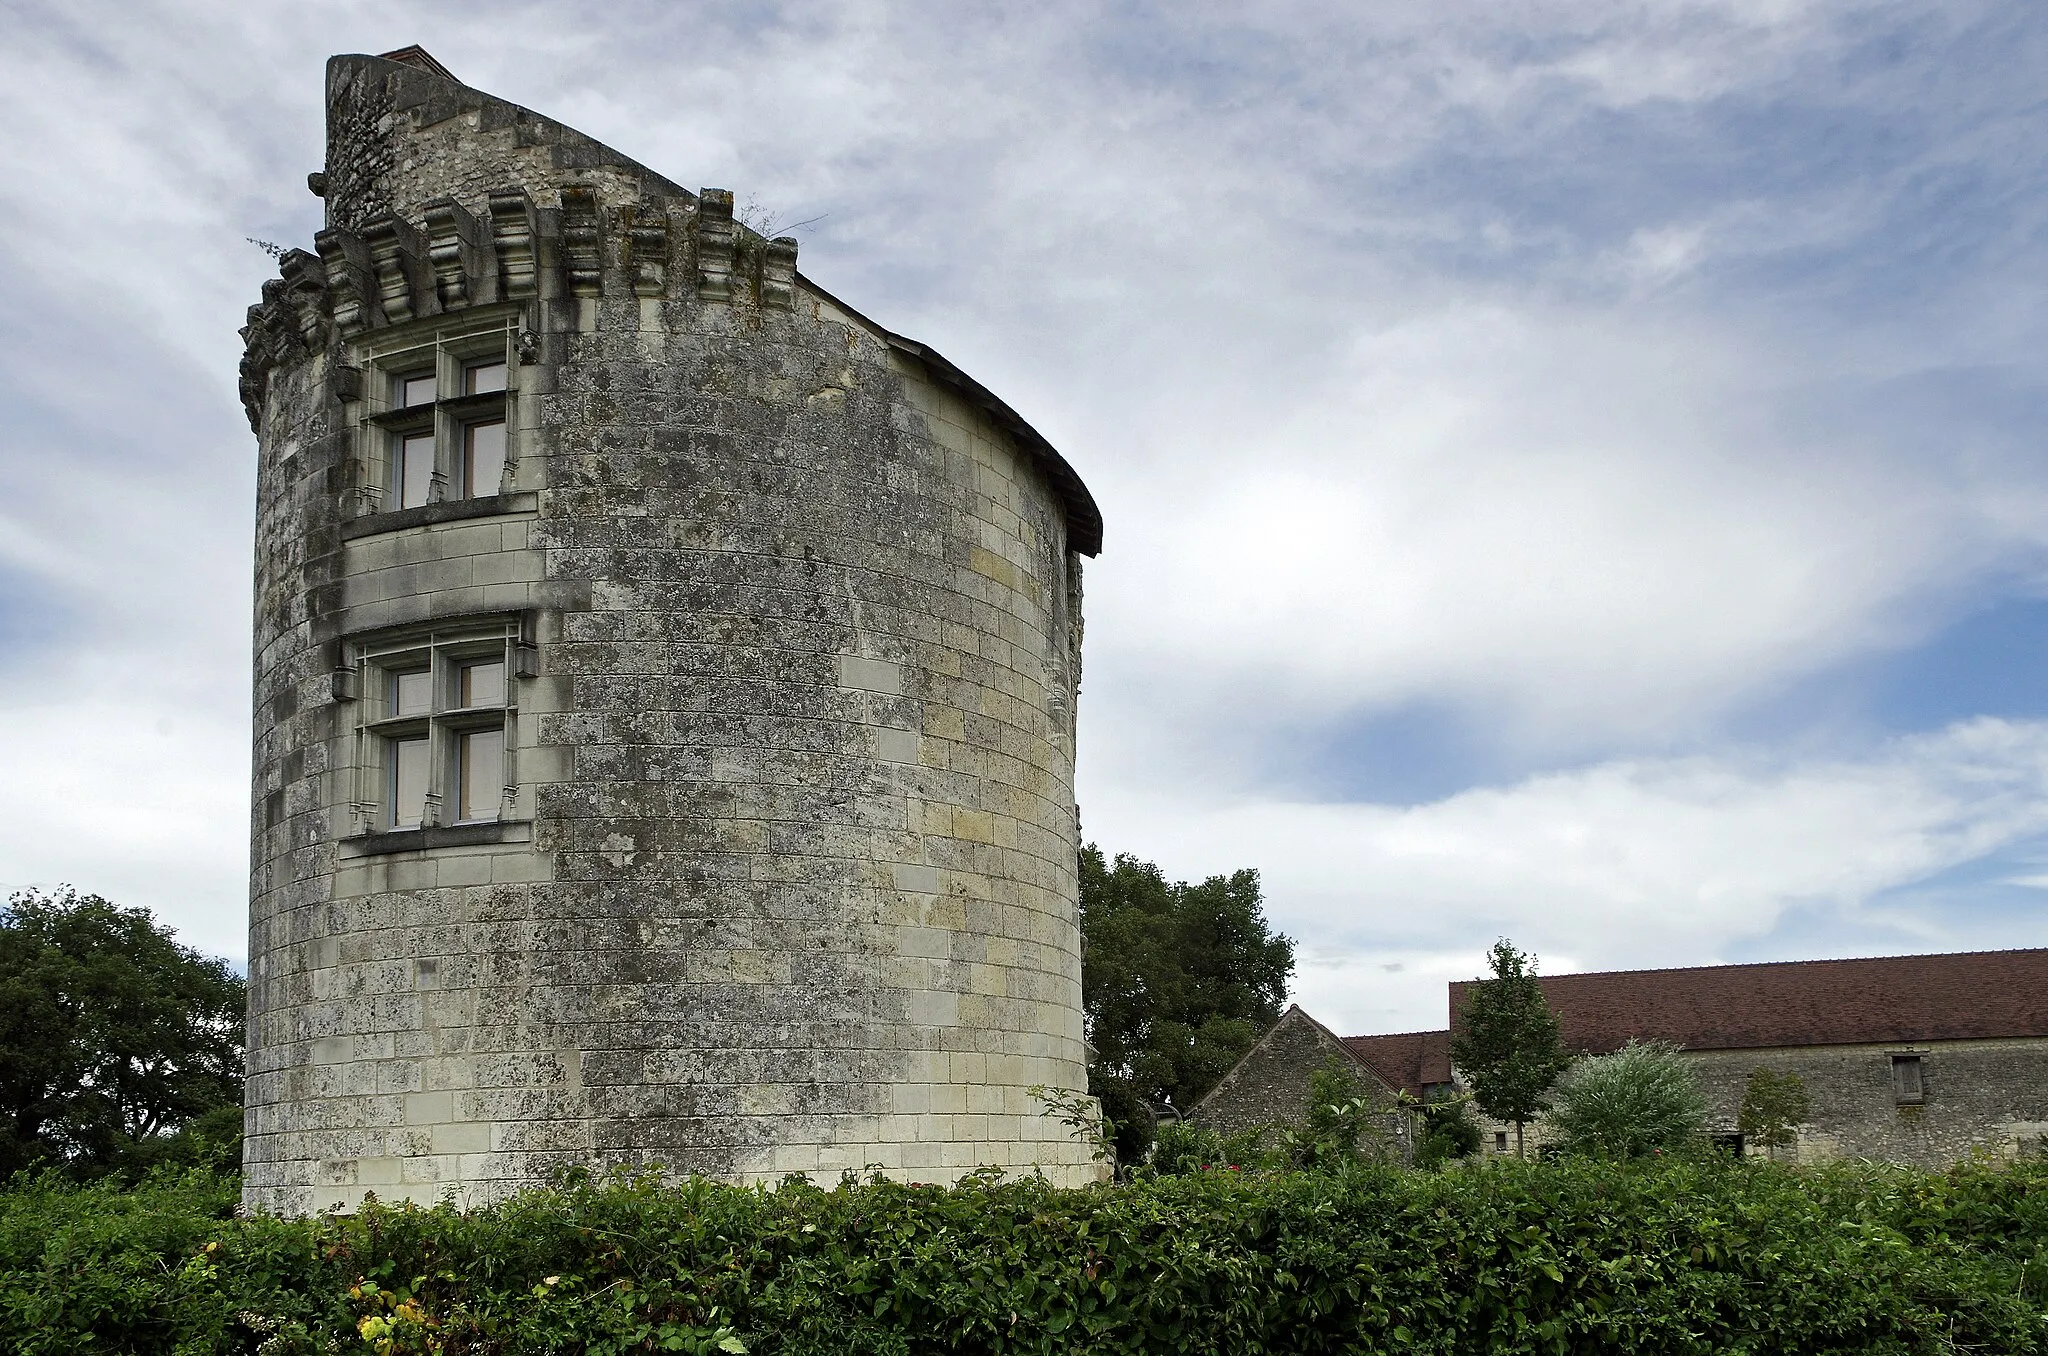 Photo showing: Bossée (Indre-et-Loire)
Vestiges du Château des Etangs (Fin XVe siècle)

Le château fortifié fut bâti vers 1492 par l'abbé de Cormery Jean du Puy*. Il s'agissait d'une dépendance de l'abbaye de Cormery.
Les bâtiments délimitaient une cour carrée. L'ensemble était entouré de douves.
La tour cylindrique sud-ouest a été percée de fenêtres à meneaux à la Renaissance.
Le château a été partiellement détruit détruit en 1707 par l'abbé commendataire de Cormery, Guillaume-Nicolas de Bautru-Vaubrun*.
Devenu bien national, le château fut vendu en 1791 pour 12 300 livres.

Jean du Puy a été le dernier abbé élu de Cormery. Il avait été élu par les religieux après la mort de l'abbé Jean Conseil en 1490. Mais, le roi Louis XI ne voulu point le reconnaître et imposa comme abbé un certain Poton de Ceuilly, ce que les religieux refusèrent. La polémique se termina avec la mort de Poton de Ceuilly. L'abbé suivant, Denis Briçonnet, fut un abbé commendataire. C'est le concordat de Bologne qui en 1516 institue la "commende", qui laisse au pouvoir civil le soin de désigner les responsables séculiers et réguliers, ce qui déclenche une course à ces fonctions lucratives ( grâce à l'usufruit des bénéfices ecclésiastiques).  Denis Briçonnet, premier abbé commendataire de Cormery était d'ailleurs issu de la grande bourgeoisie financière de Tours.

Guillaume-Nicolas de Bautru-Vaubrun, abbé de Cormery et de Saint-Georges sur Loire, lecteur de la chambre du Roi, mort en 1746 âgé de 85 ans. Il fut abbé de Cormery de 1732 à sa mort. Celui-ci laissa tous ses bien, y compris la châtellenie de Louvaines à sa soeur Madelaine-Diane de Bautru épouse du duc d'Estrée. Les Bautru était une famille fort riche et proche du roi. (cormery.fr/index?page=article&id_categorieA=2&id_...)

(Revue historique de la noblesse Vol 3 - Paris 1843)